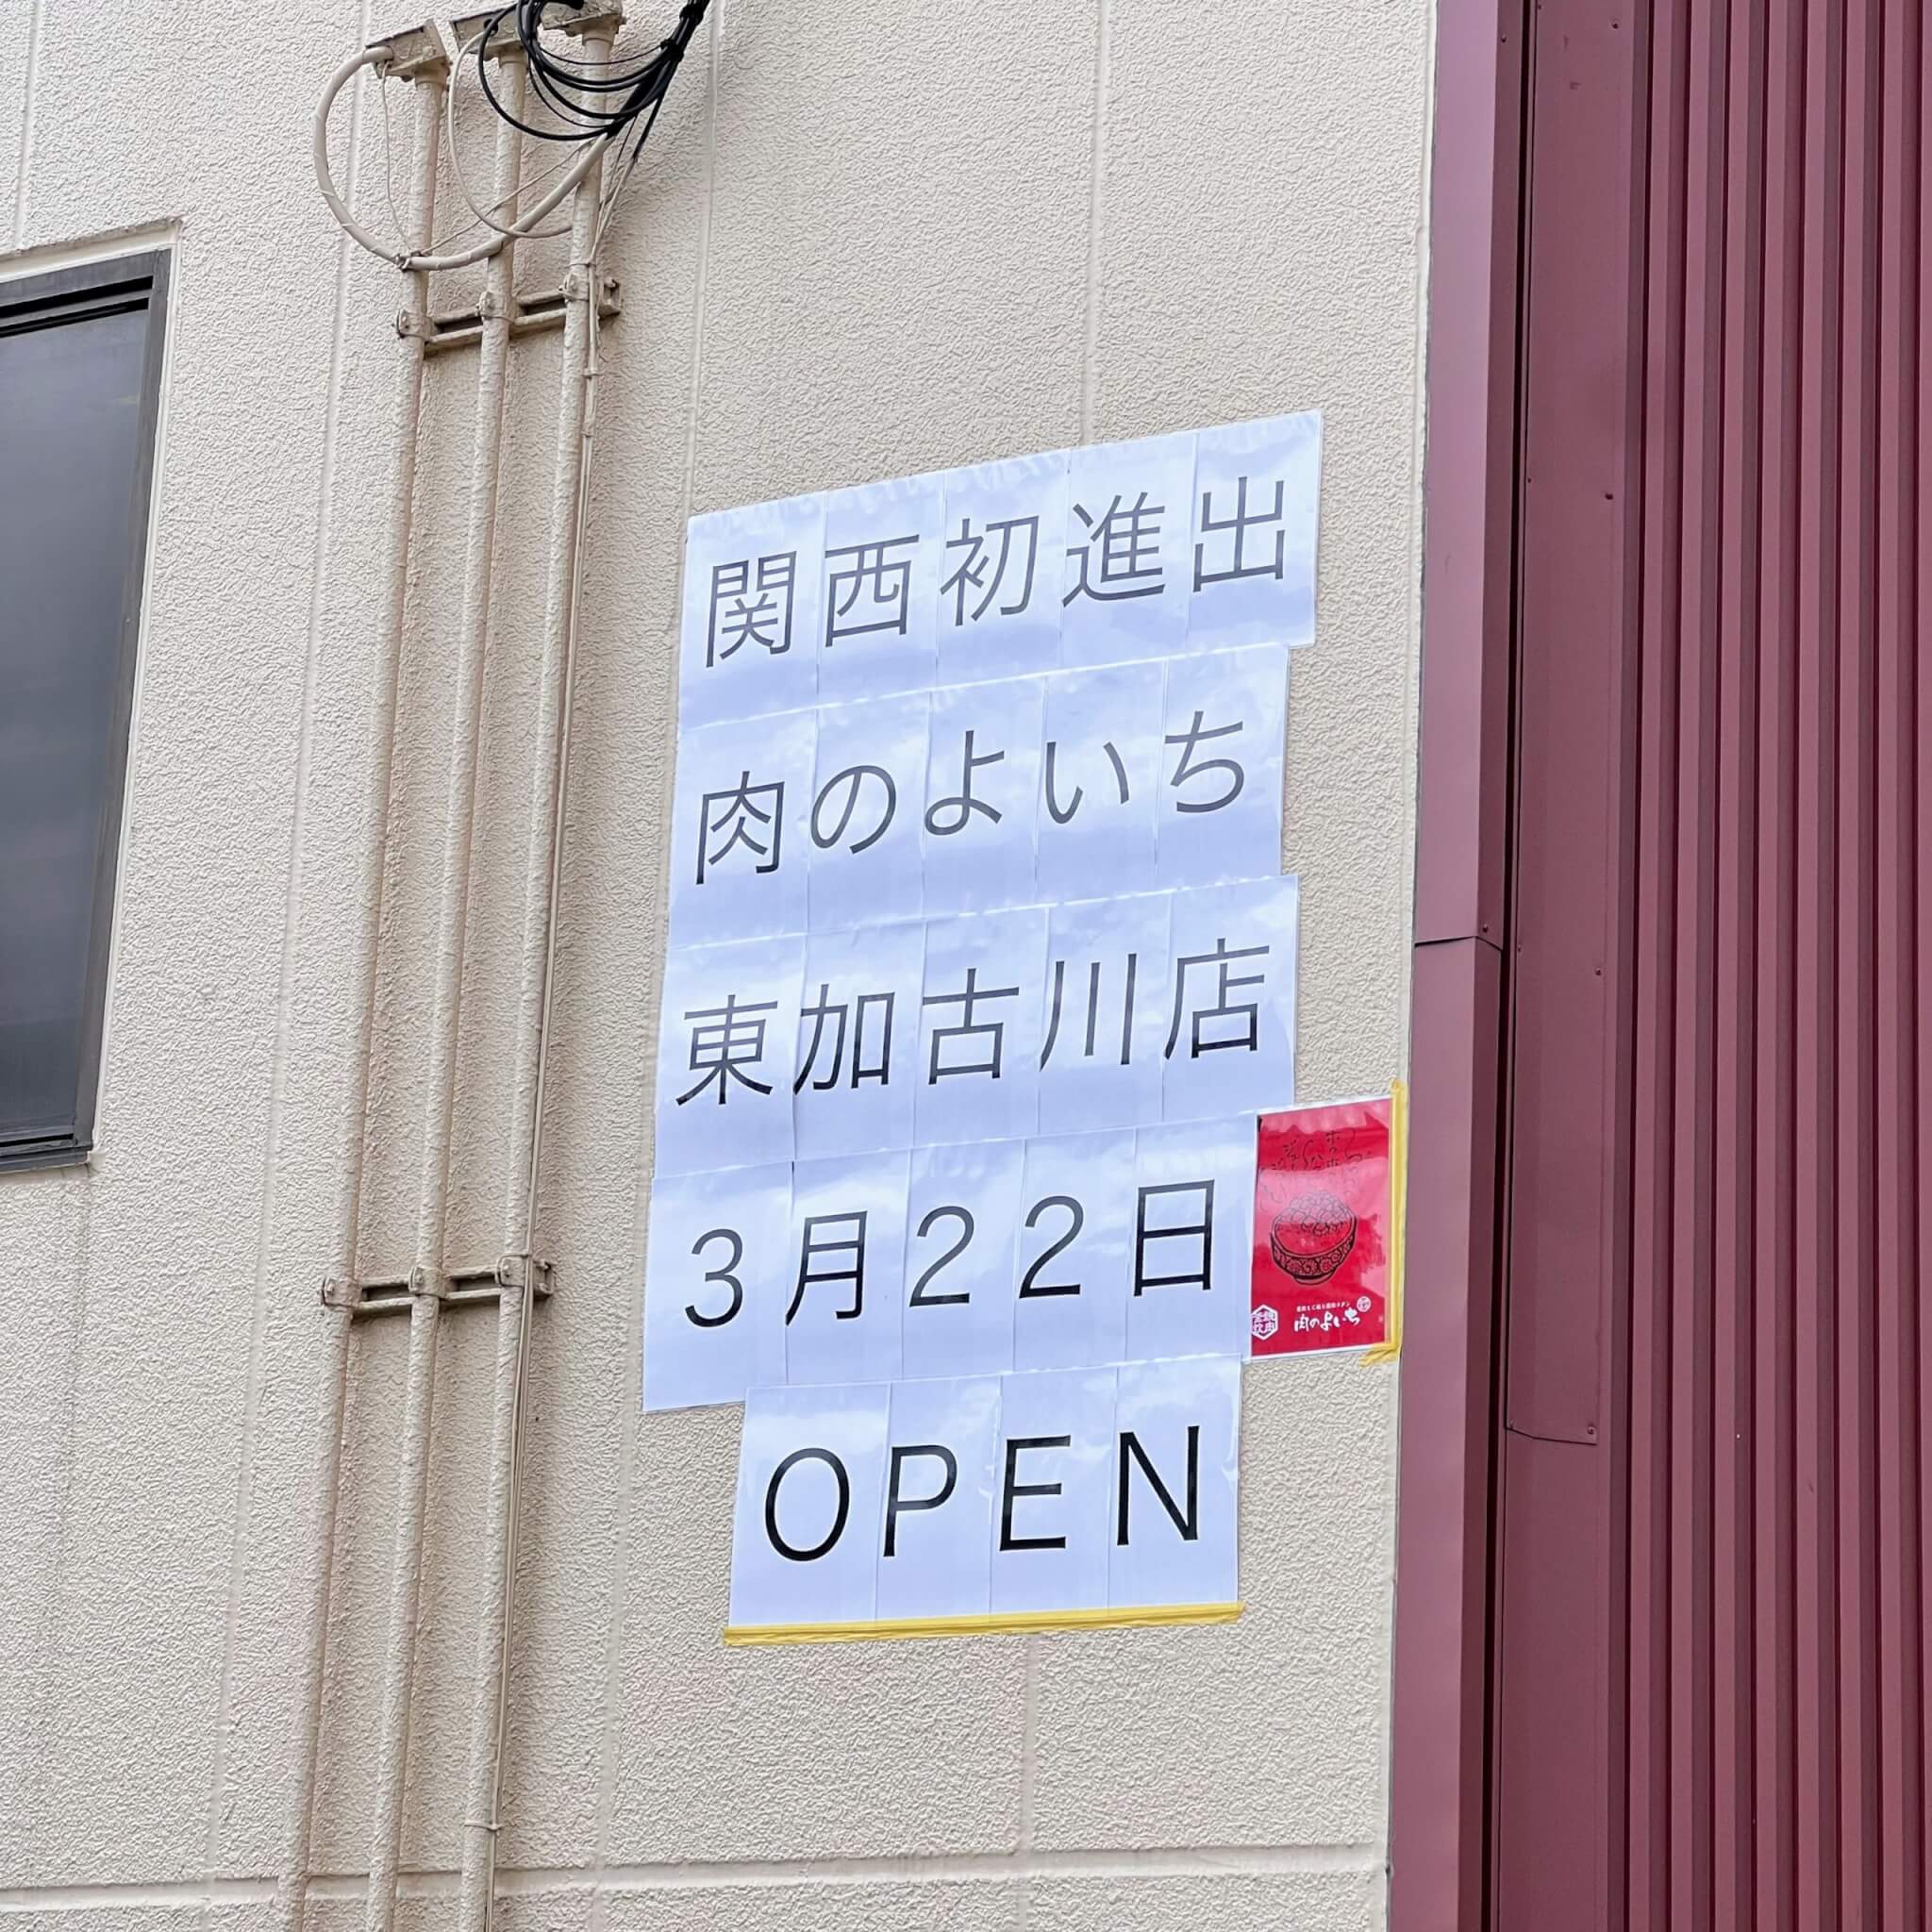 関西初進出肉のよいち東加古川店3月22日OPENと壁面に書かれていました